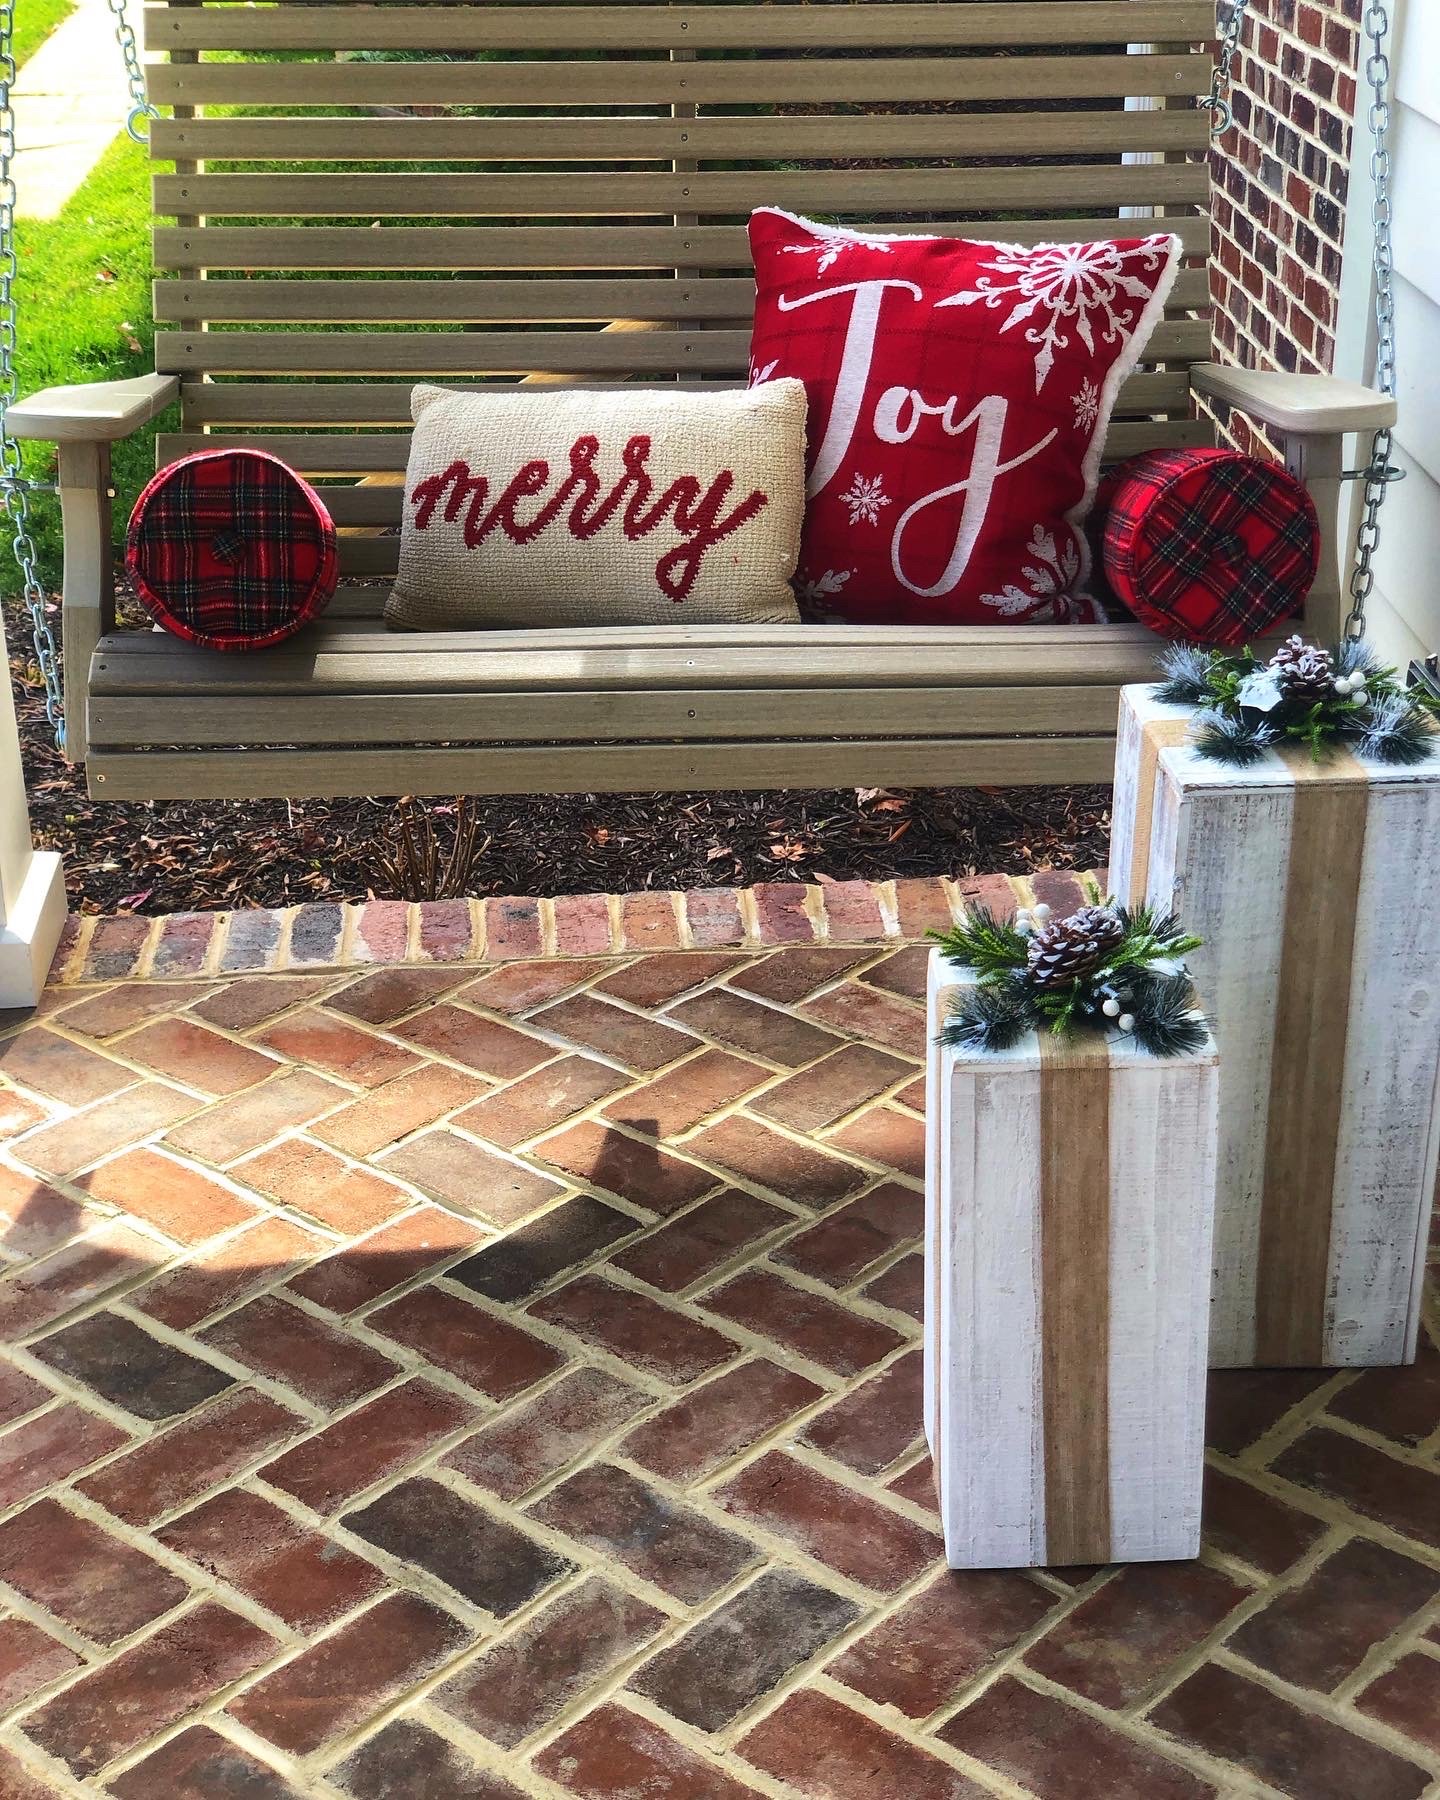 Seasonal and Holiday porch decor by Su Su's Petals located in Richmond VA